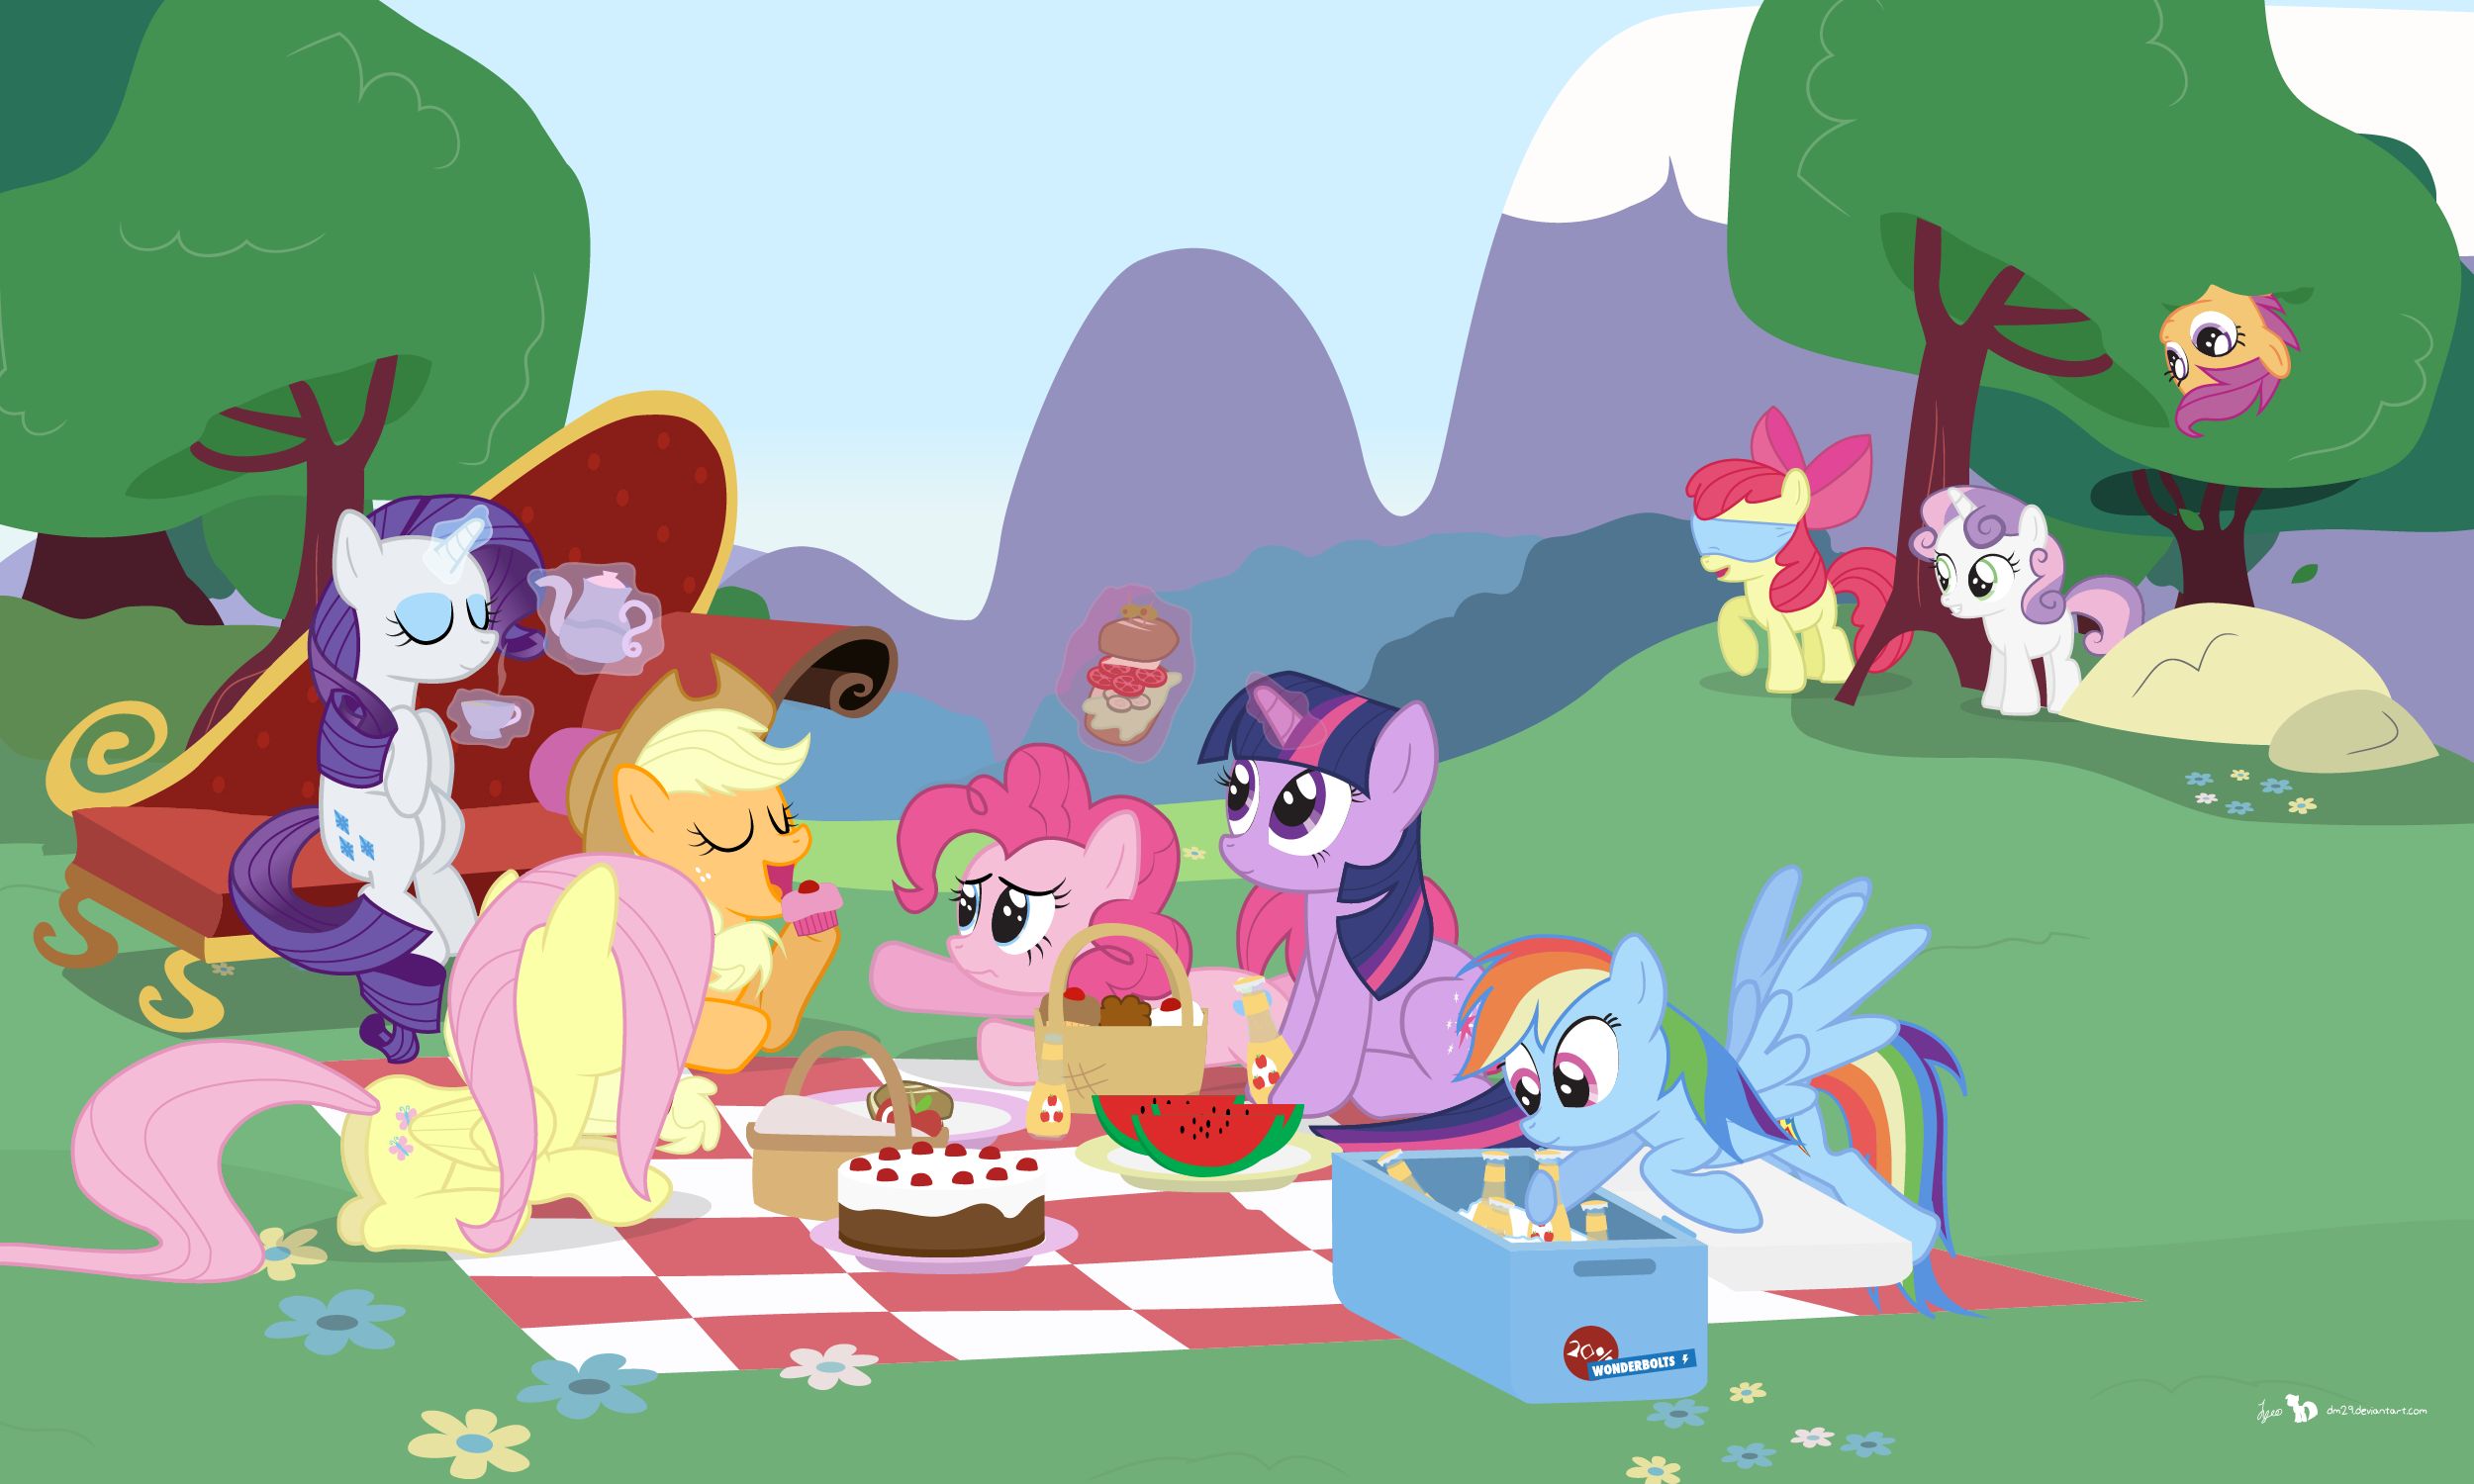 Handy-Wallpaper Picknick, Mein Kleines Pony, Pinkie Pie, Fernsehserien, Twilight Sparkle, My Little Pony Freundschaft Ist Magie, Applejack (Mein Kleines Pony), Rainbow Dash, Fluttershy (Mein Kleines Pony), Rarität (Mein Kleines Pony), Scootaloo (Mein Kleines Pony), Apfelblüte, Süße Belle kostenlos herunterladen.